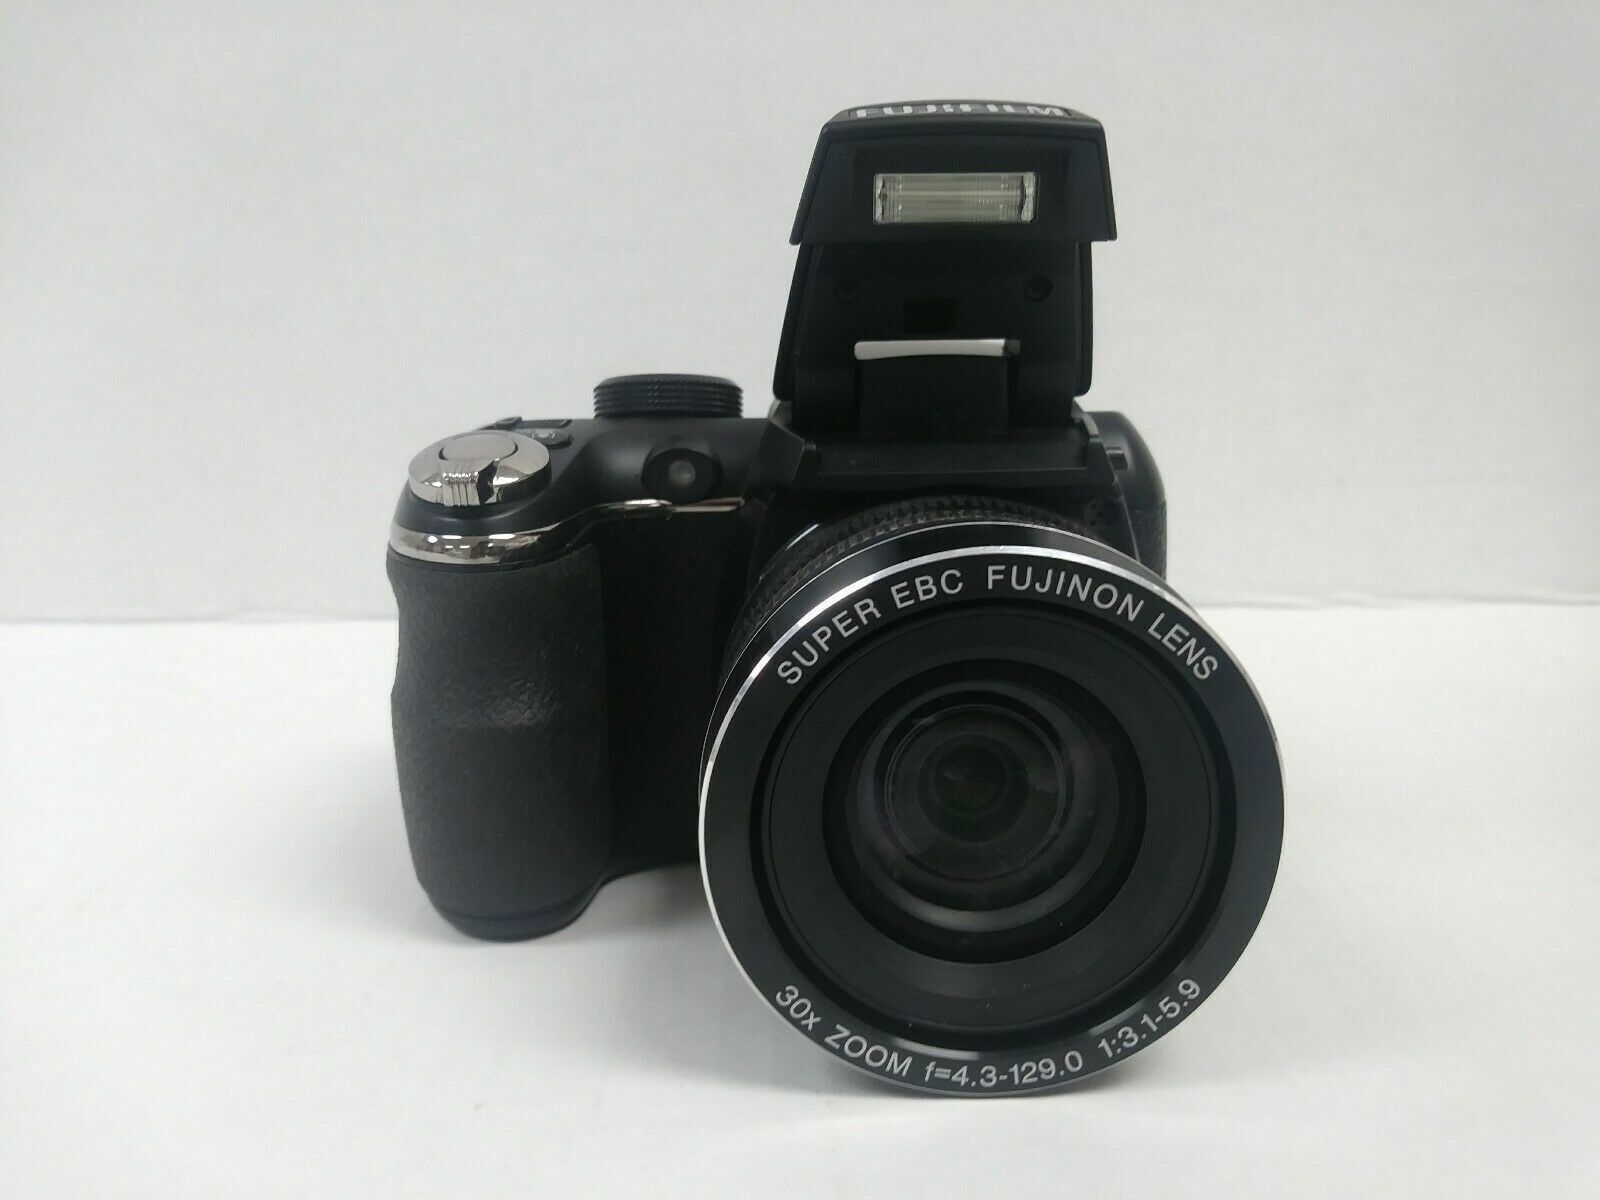 FujiFilm FinePix S4500 Digital Camera w/Super EBC Fujinon Lens (30x  Superwide)